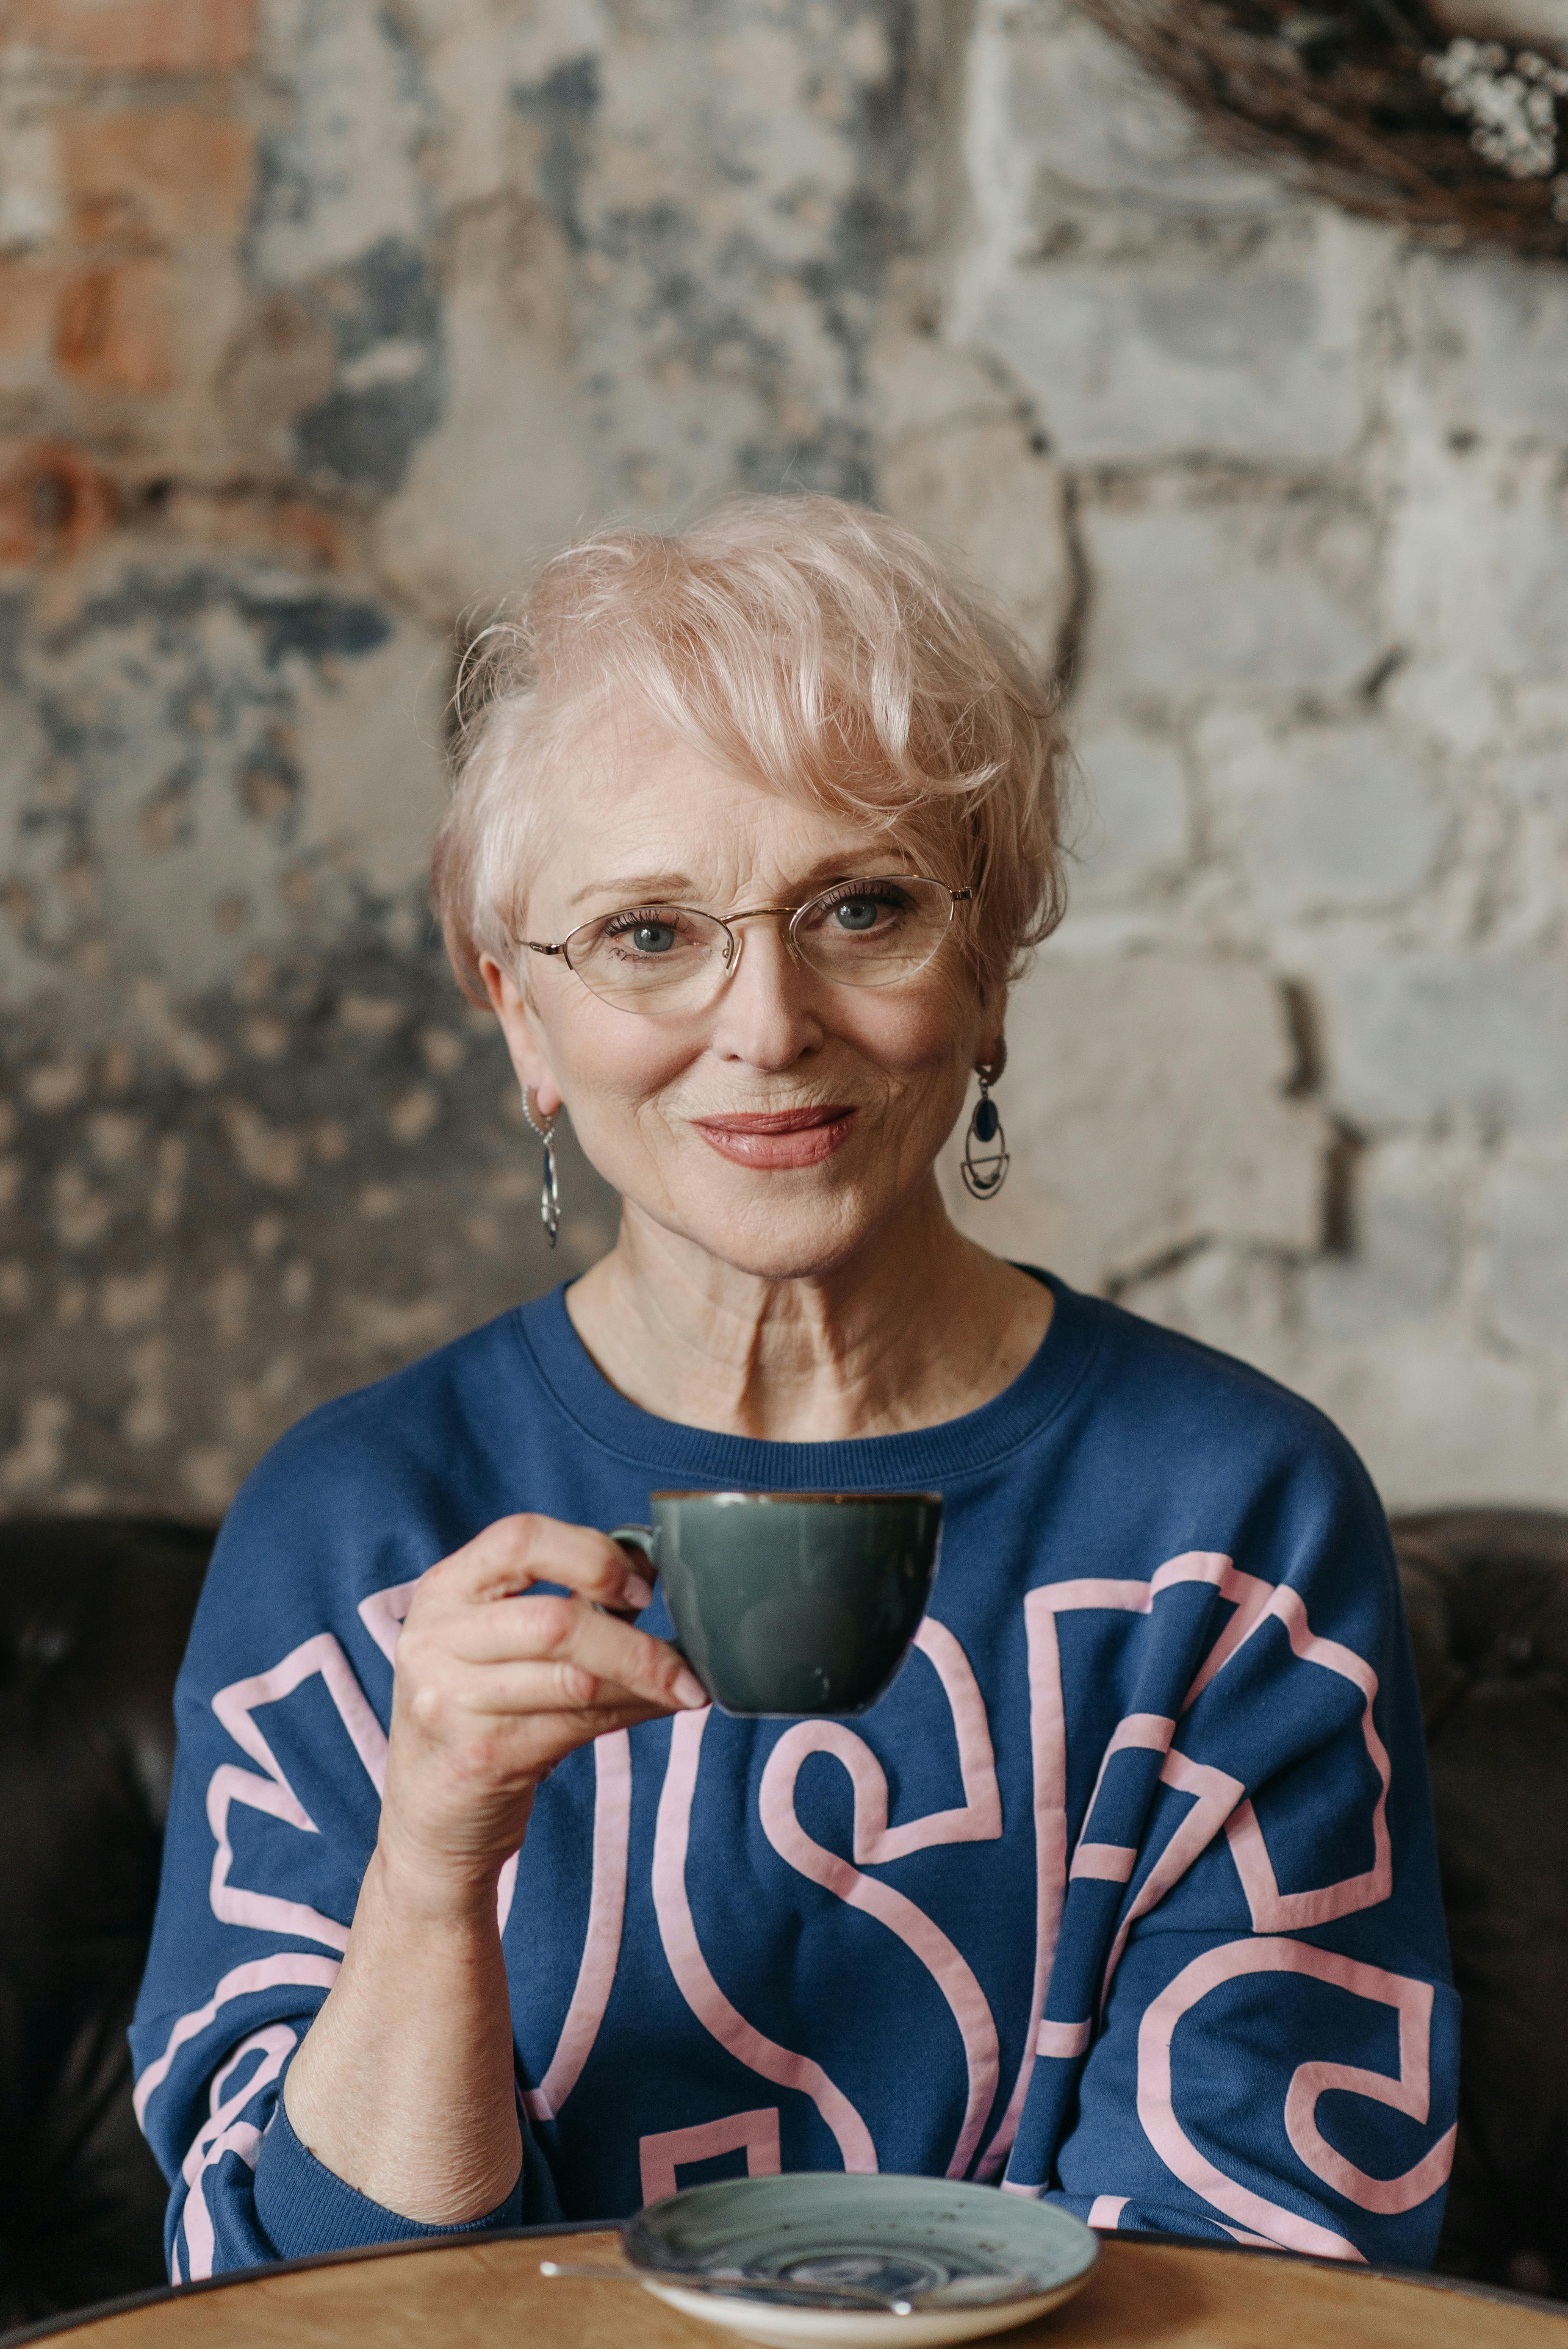 Une femme âgée souriante tenant une tasse | Source : Pexels